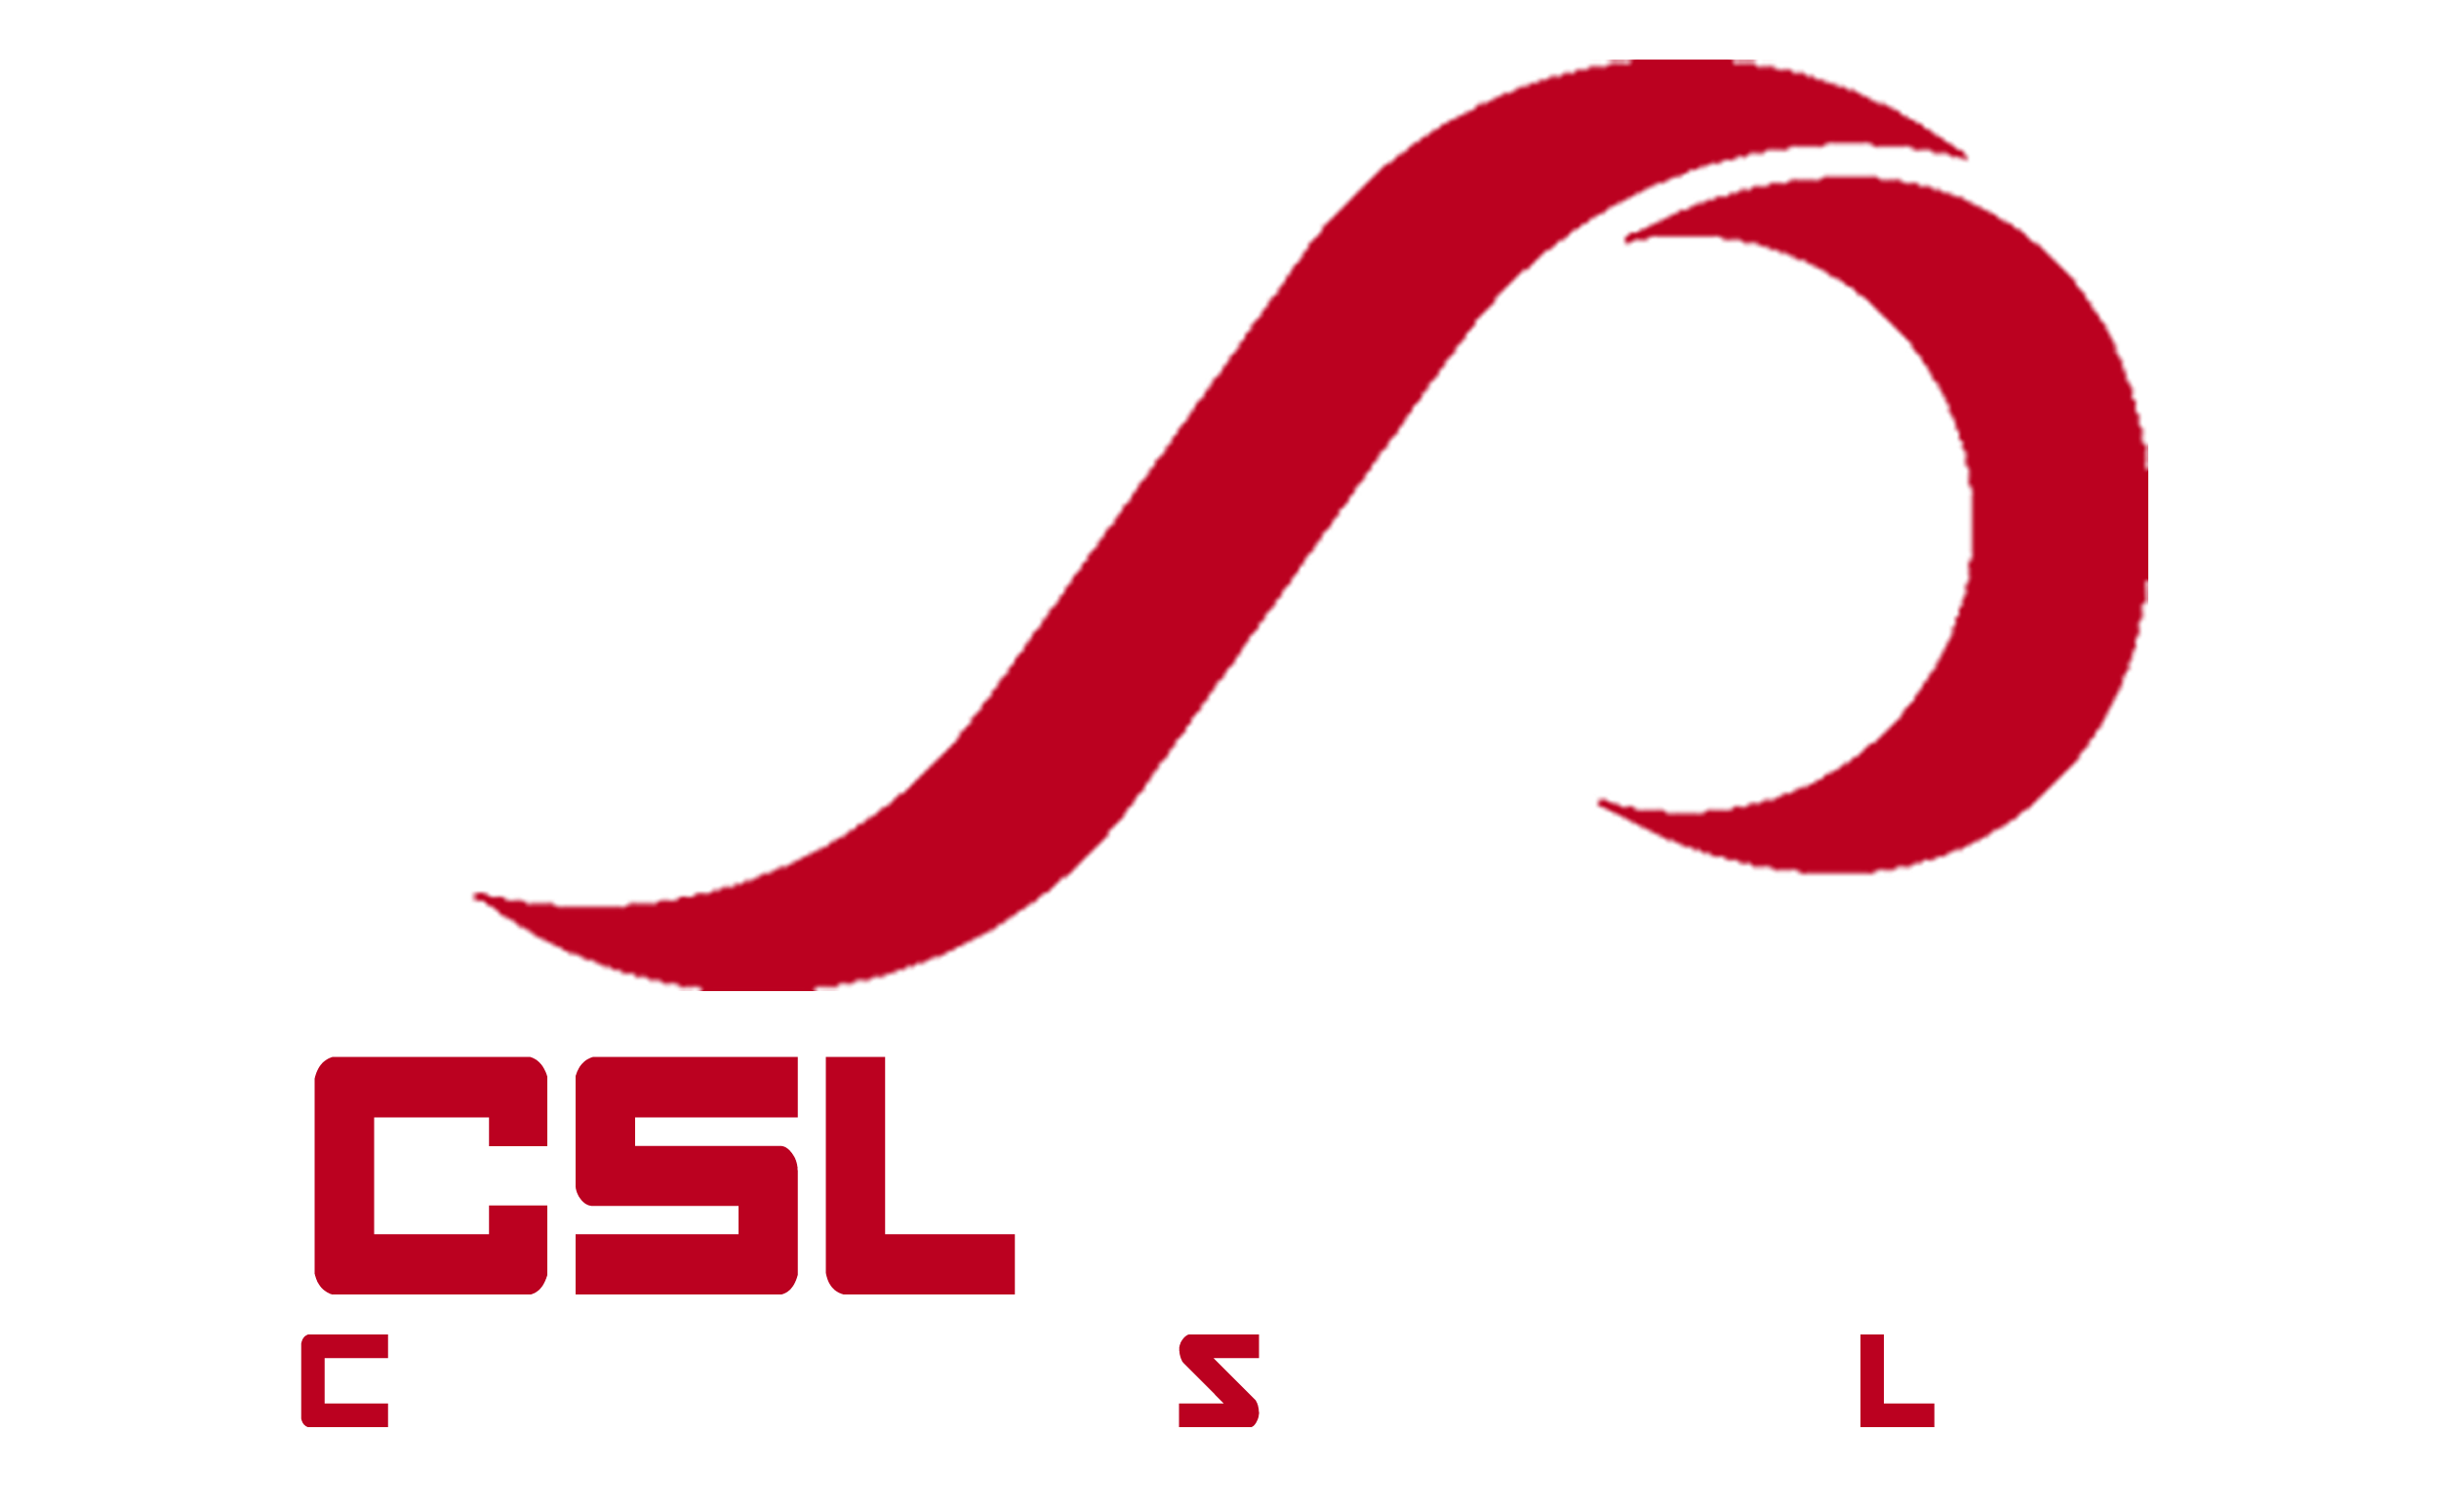 CSLab.gr - Computer Service Lab